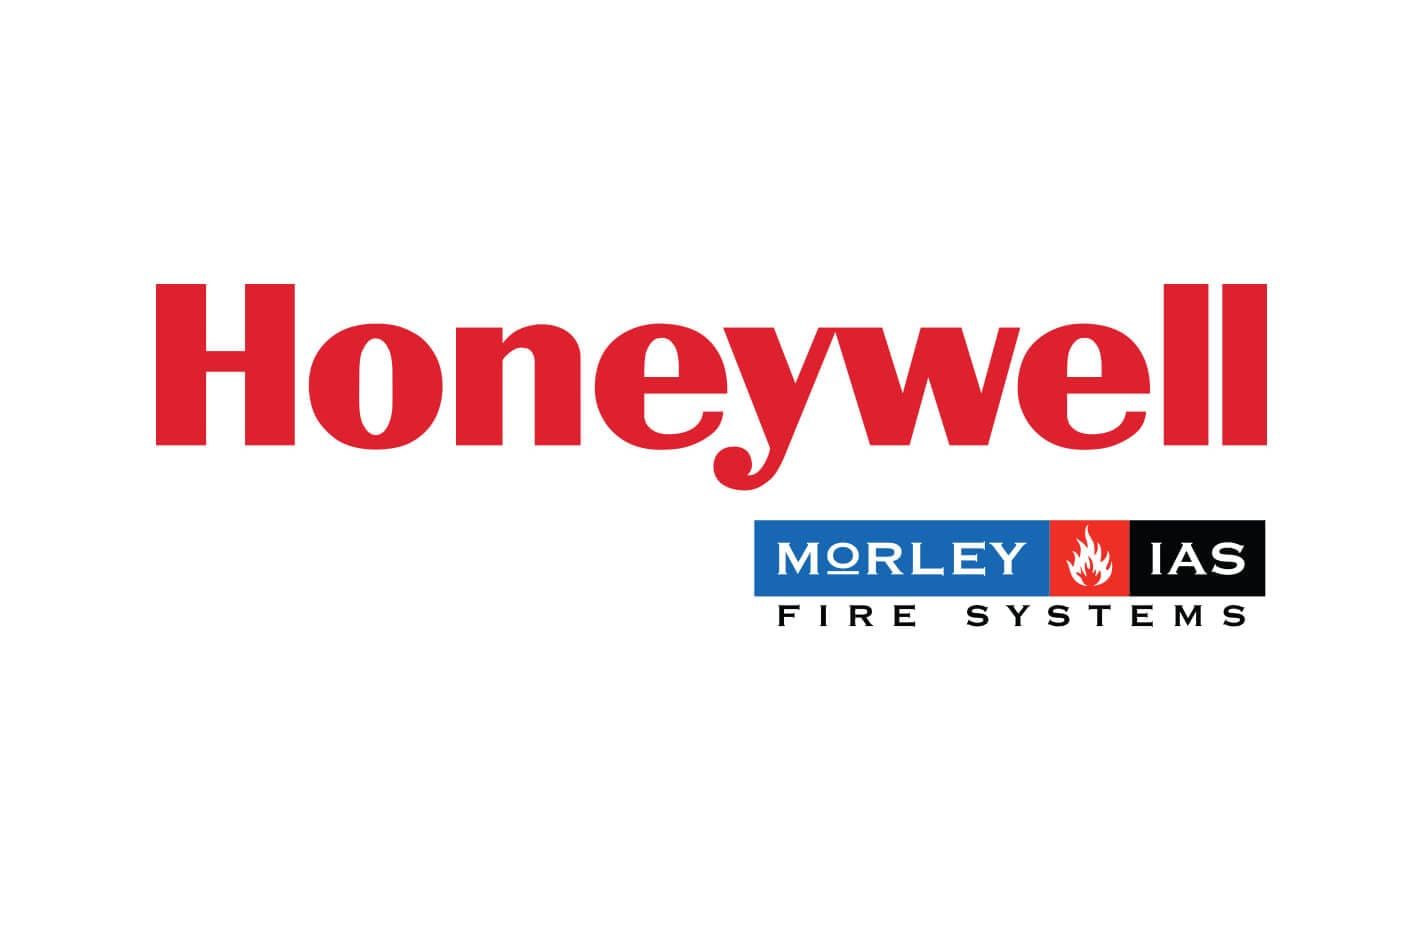 MorleyIAS by Honeywell